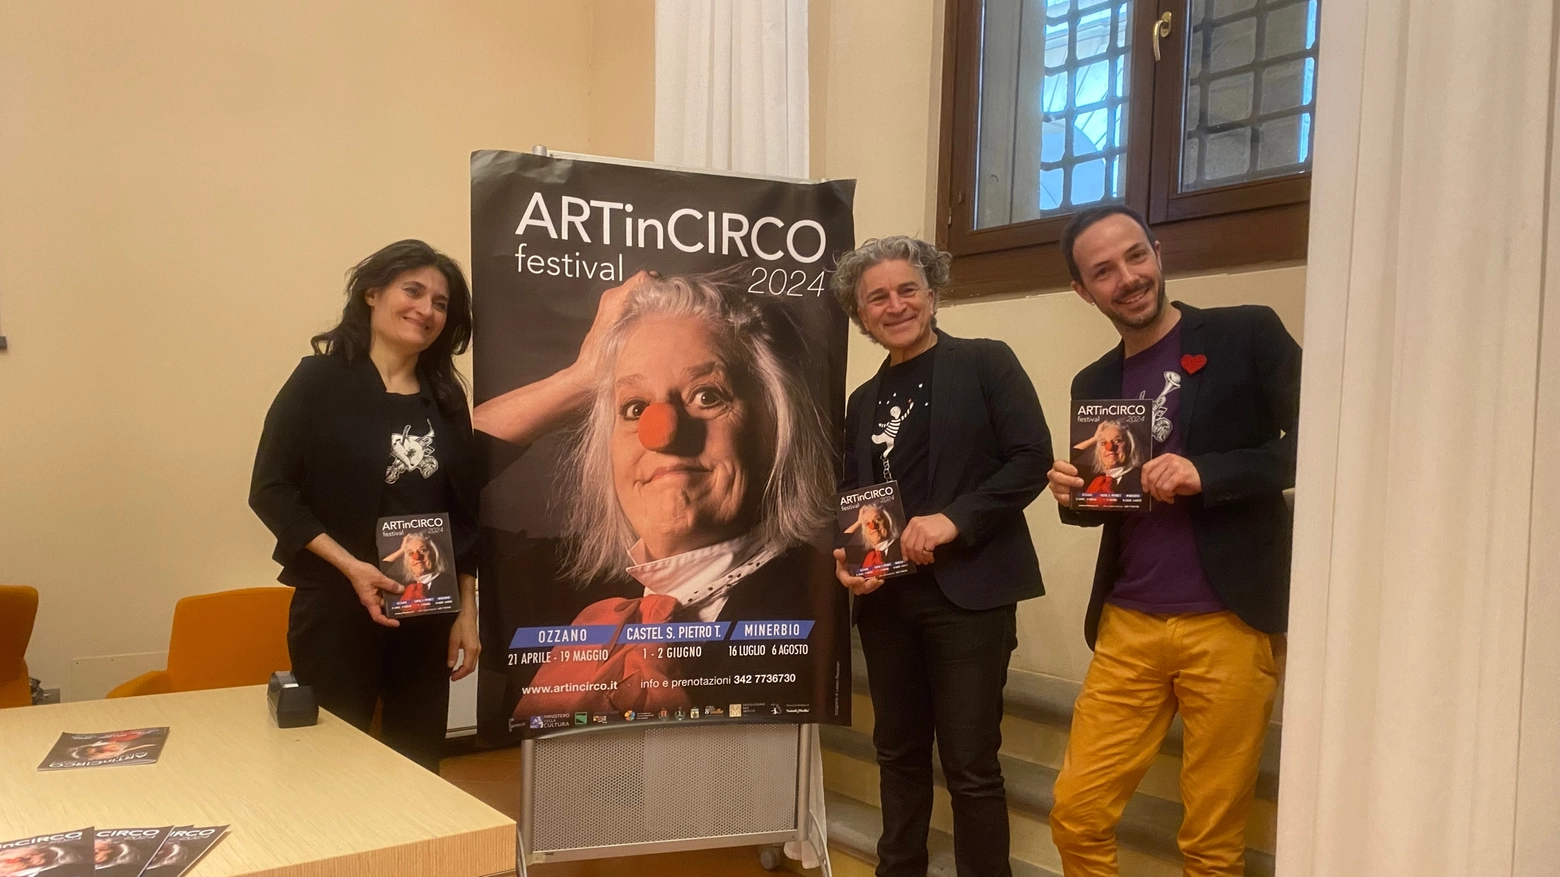 La presentazione del Festival ArtinCirco